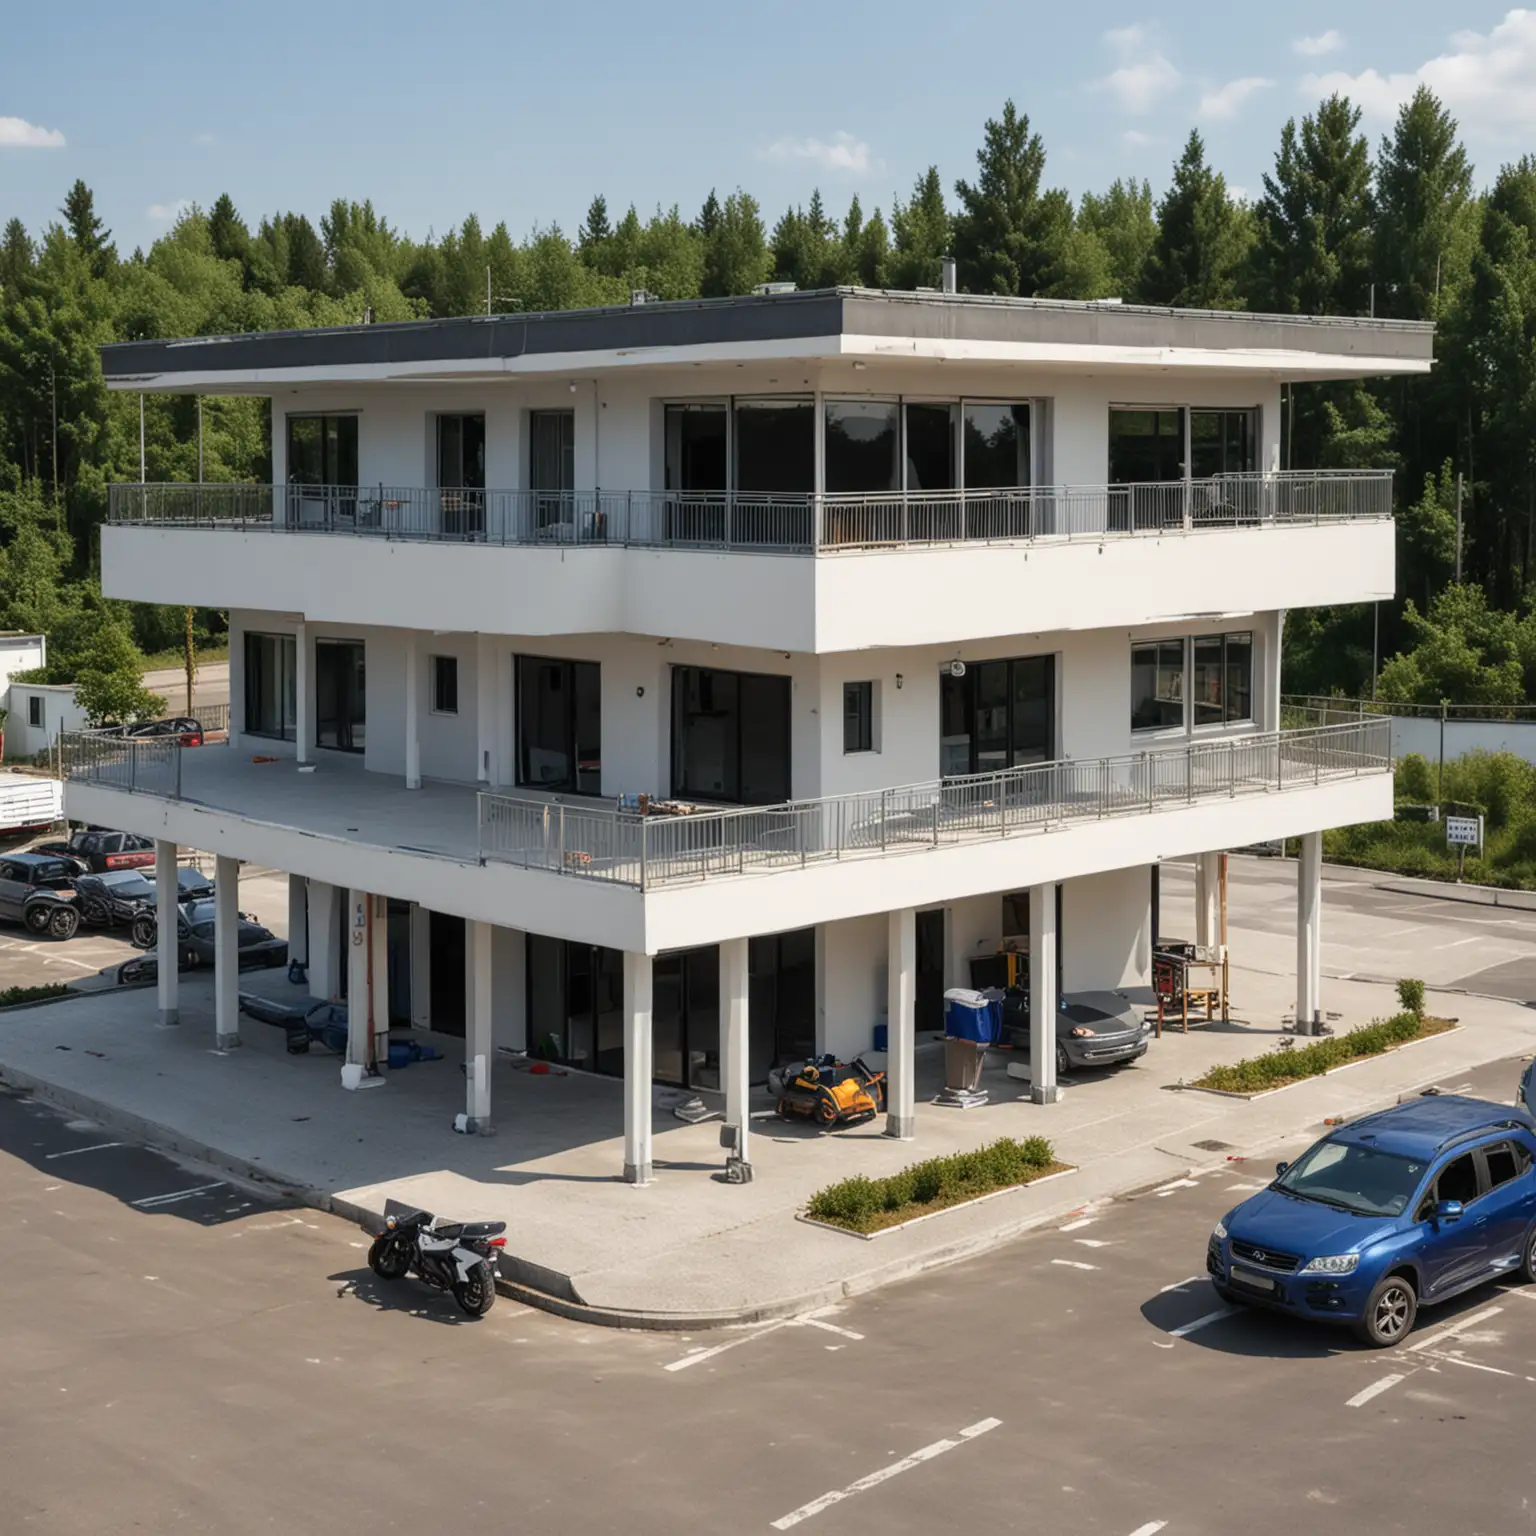 Ein Haus mit zwei Stockwerken und Flachdach auf einer Fläche von 6x6m auf Stelzen, darunter ein großer Parkplatz für 8 Autos auf einer Fläche von 10x10m